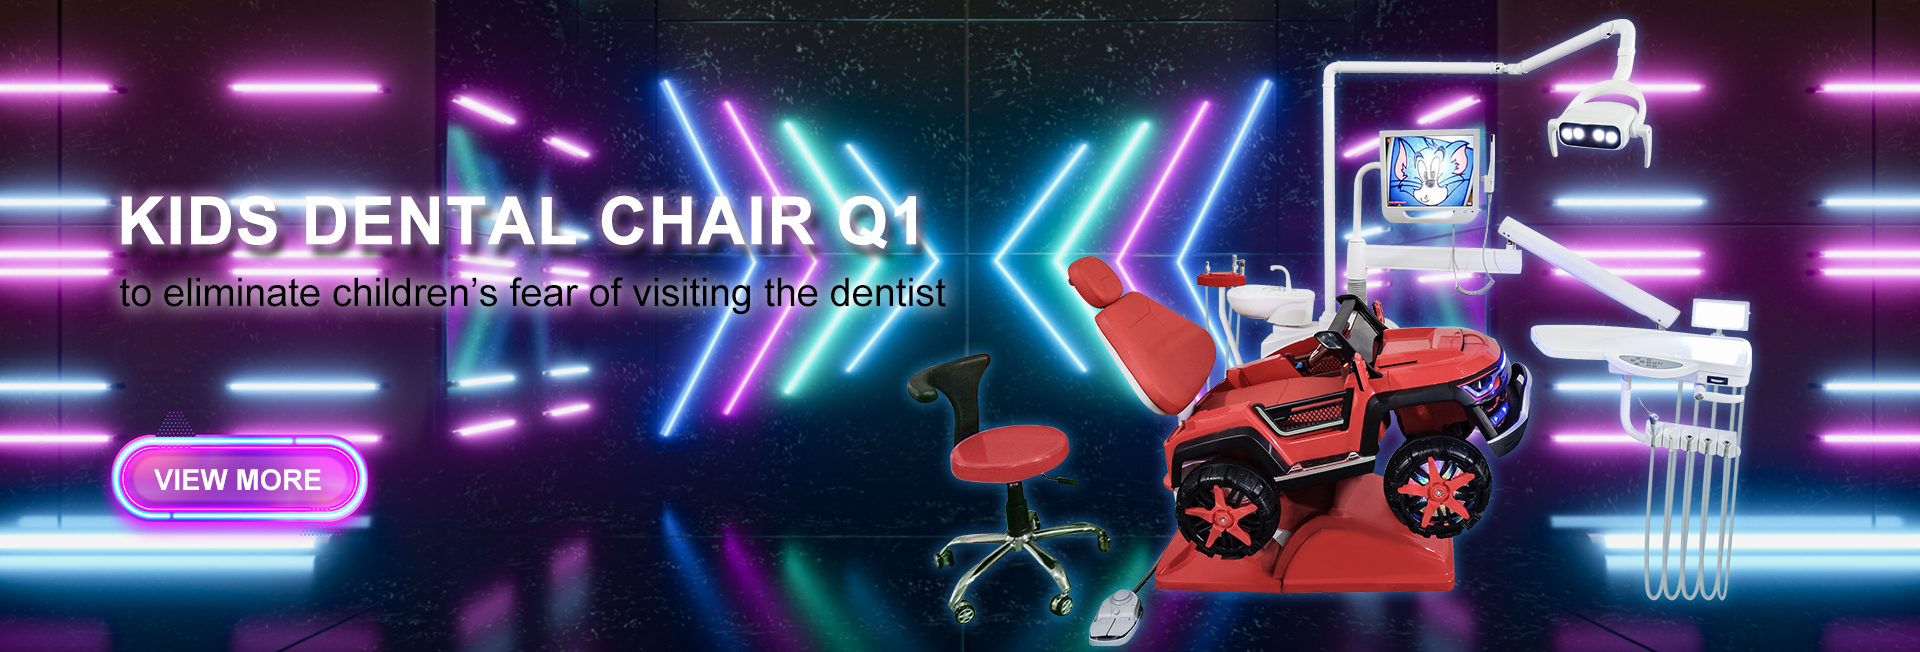 Kids dental chair Q1